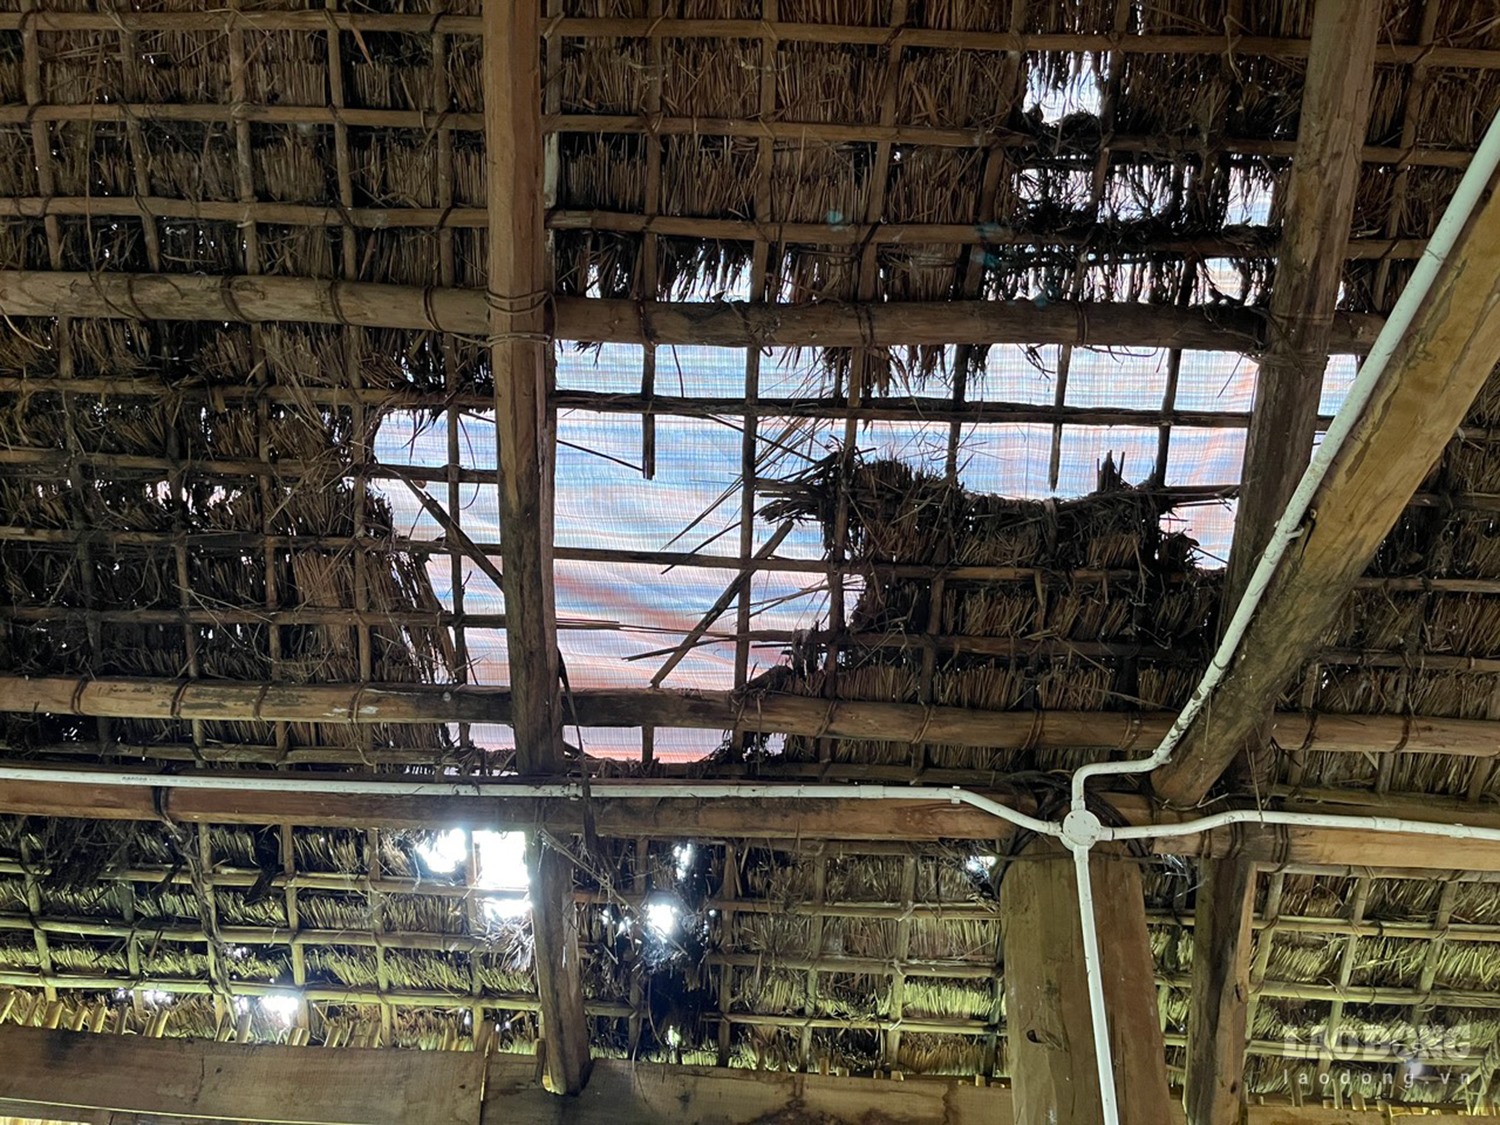 Mái nhà sàn trong khu bảo tồn rách nát. Ảnh: Ngọc Viên